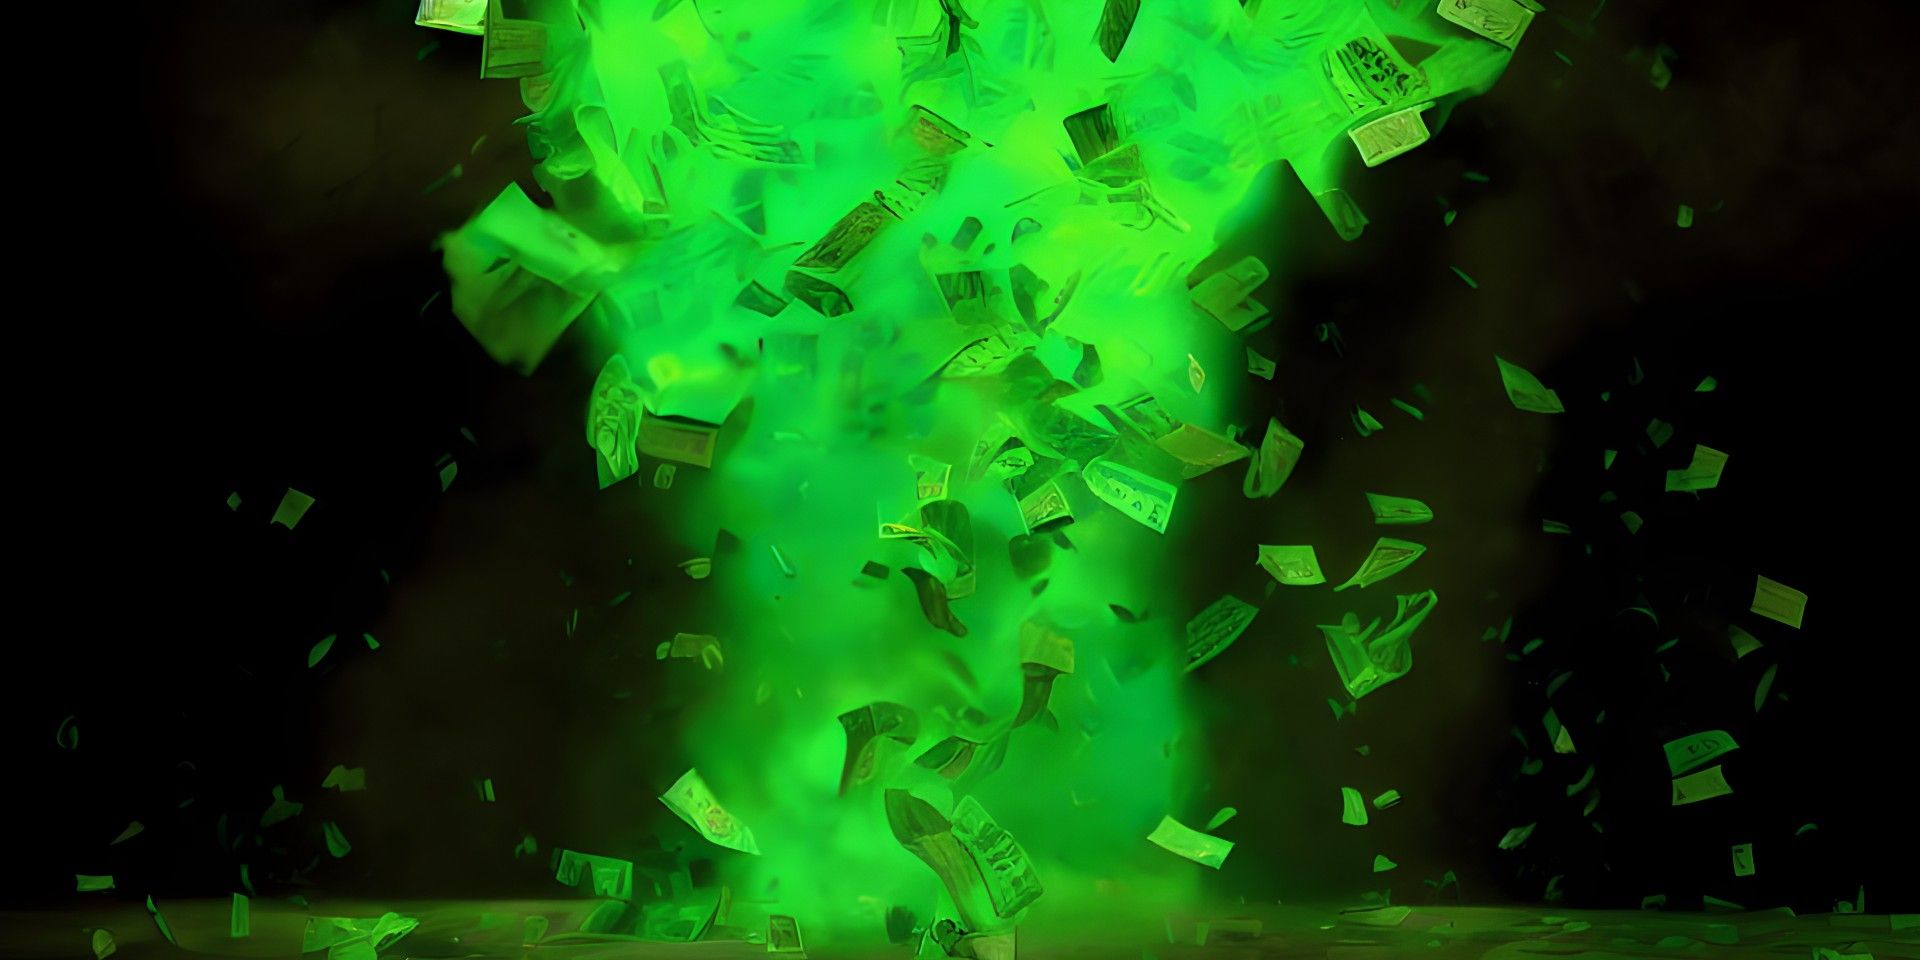 Green tornado made of dollar bills